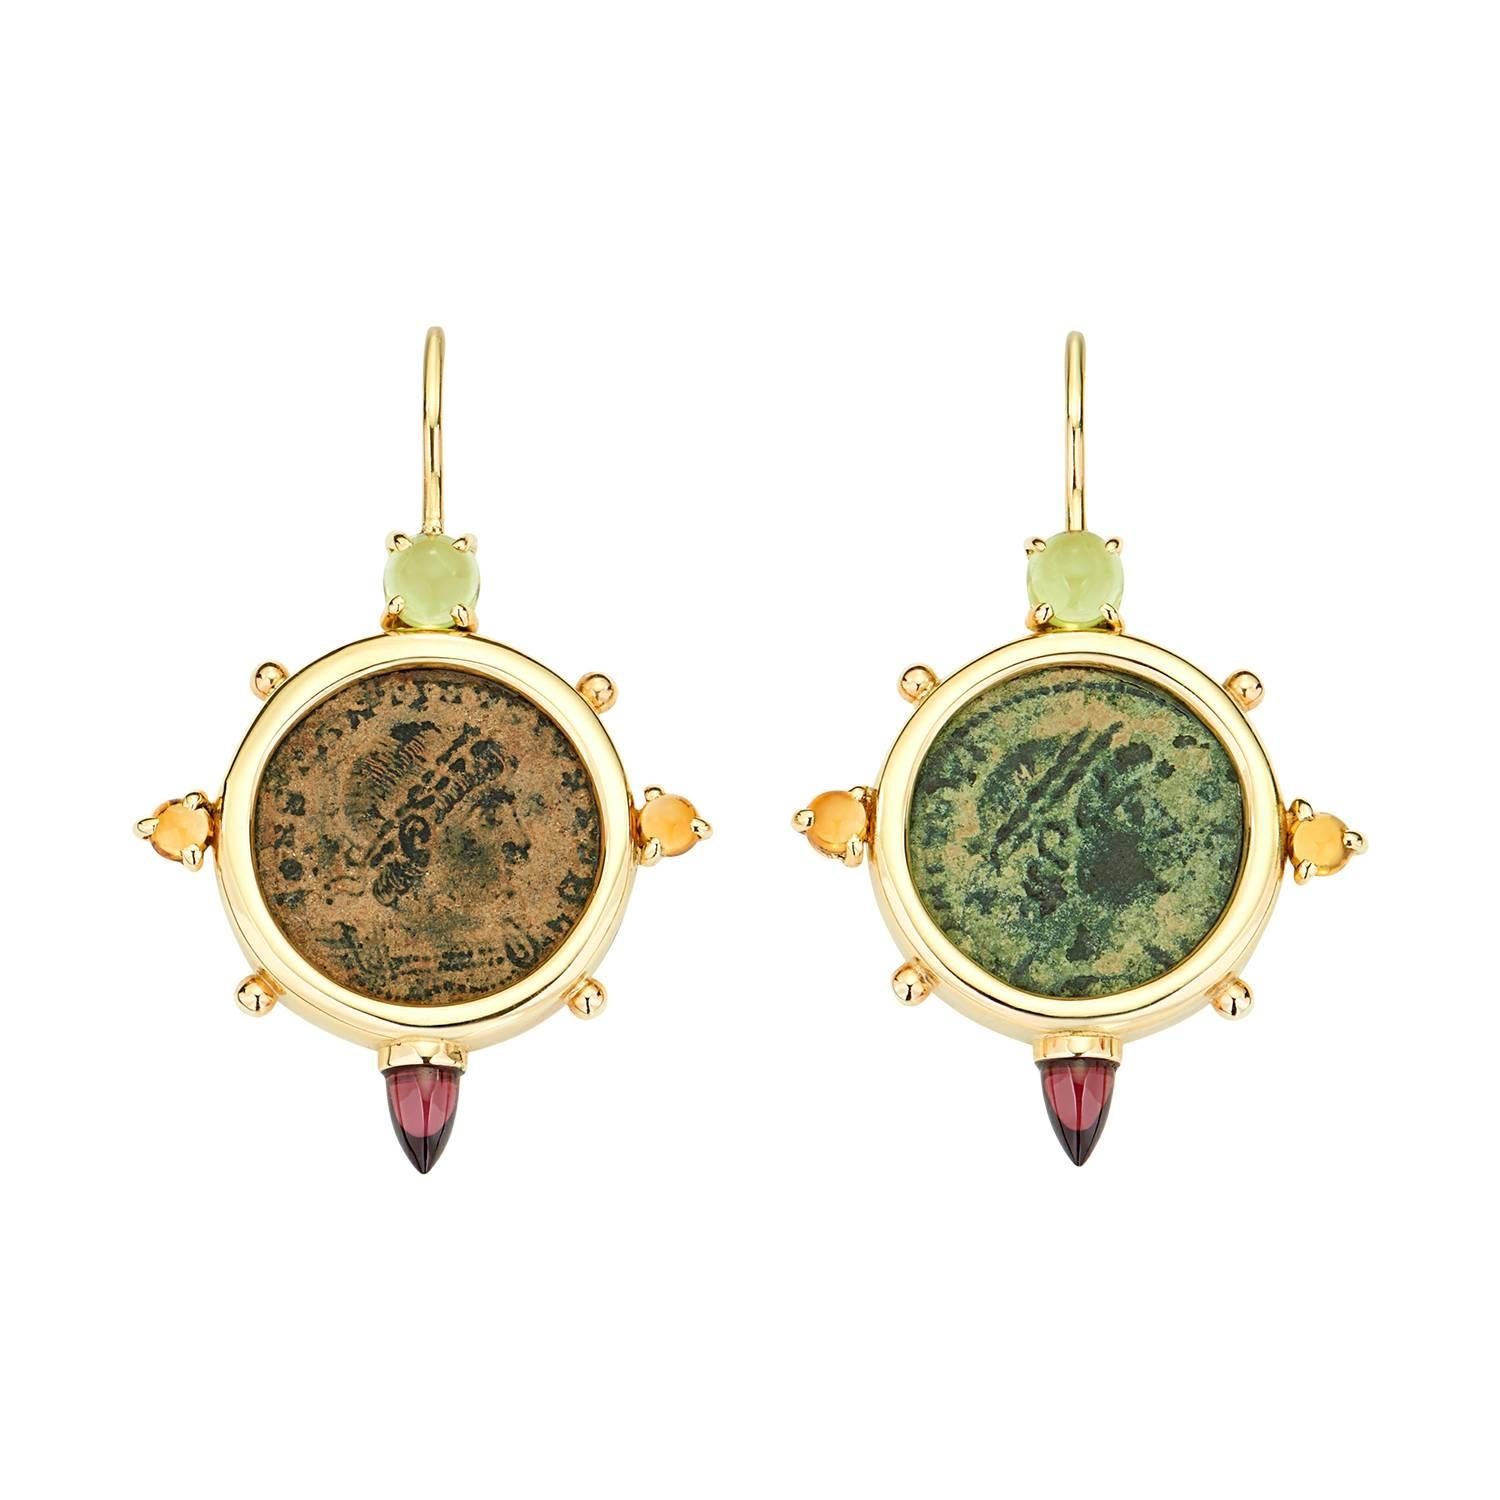 Dubini Boucles d'oreilles en or 18 carats avec pièce de monnaie romaine antique de Constantin en bronze, péridots et citrine